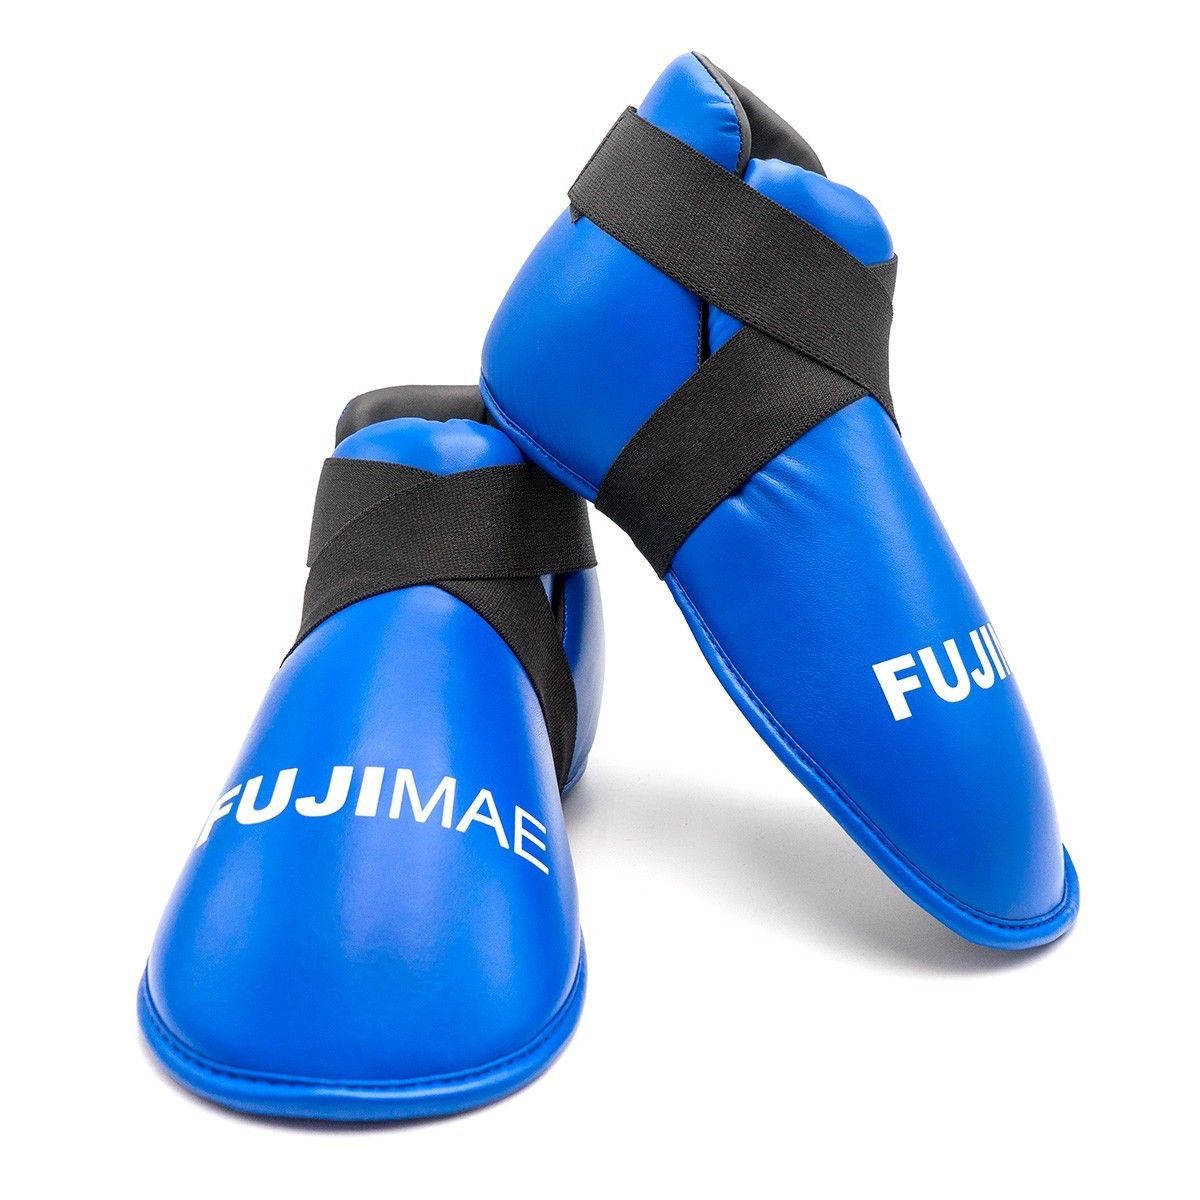 Calzari per Taekwondo ITF Approved Fujimae per allenamenti e competizioni